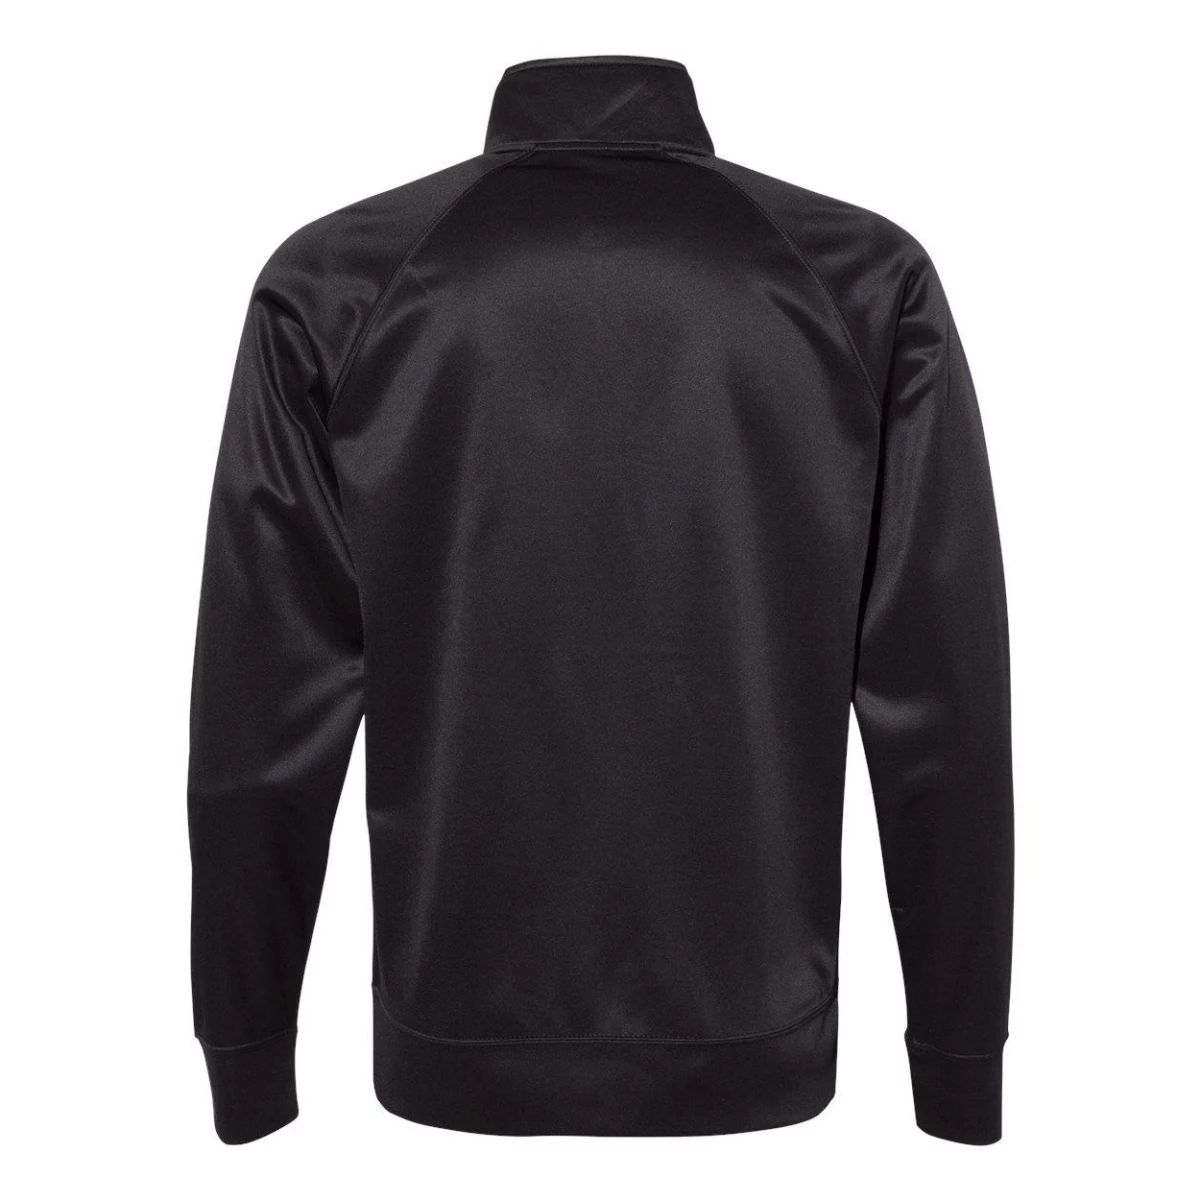 Легкая спортивная куртка Poly-Tech с молнией во весь вид, Черная Independent Trading Co., черный